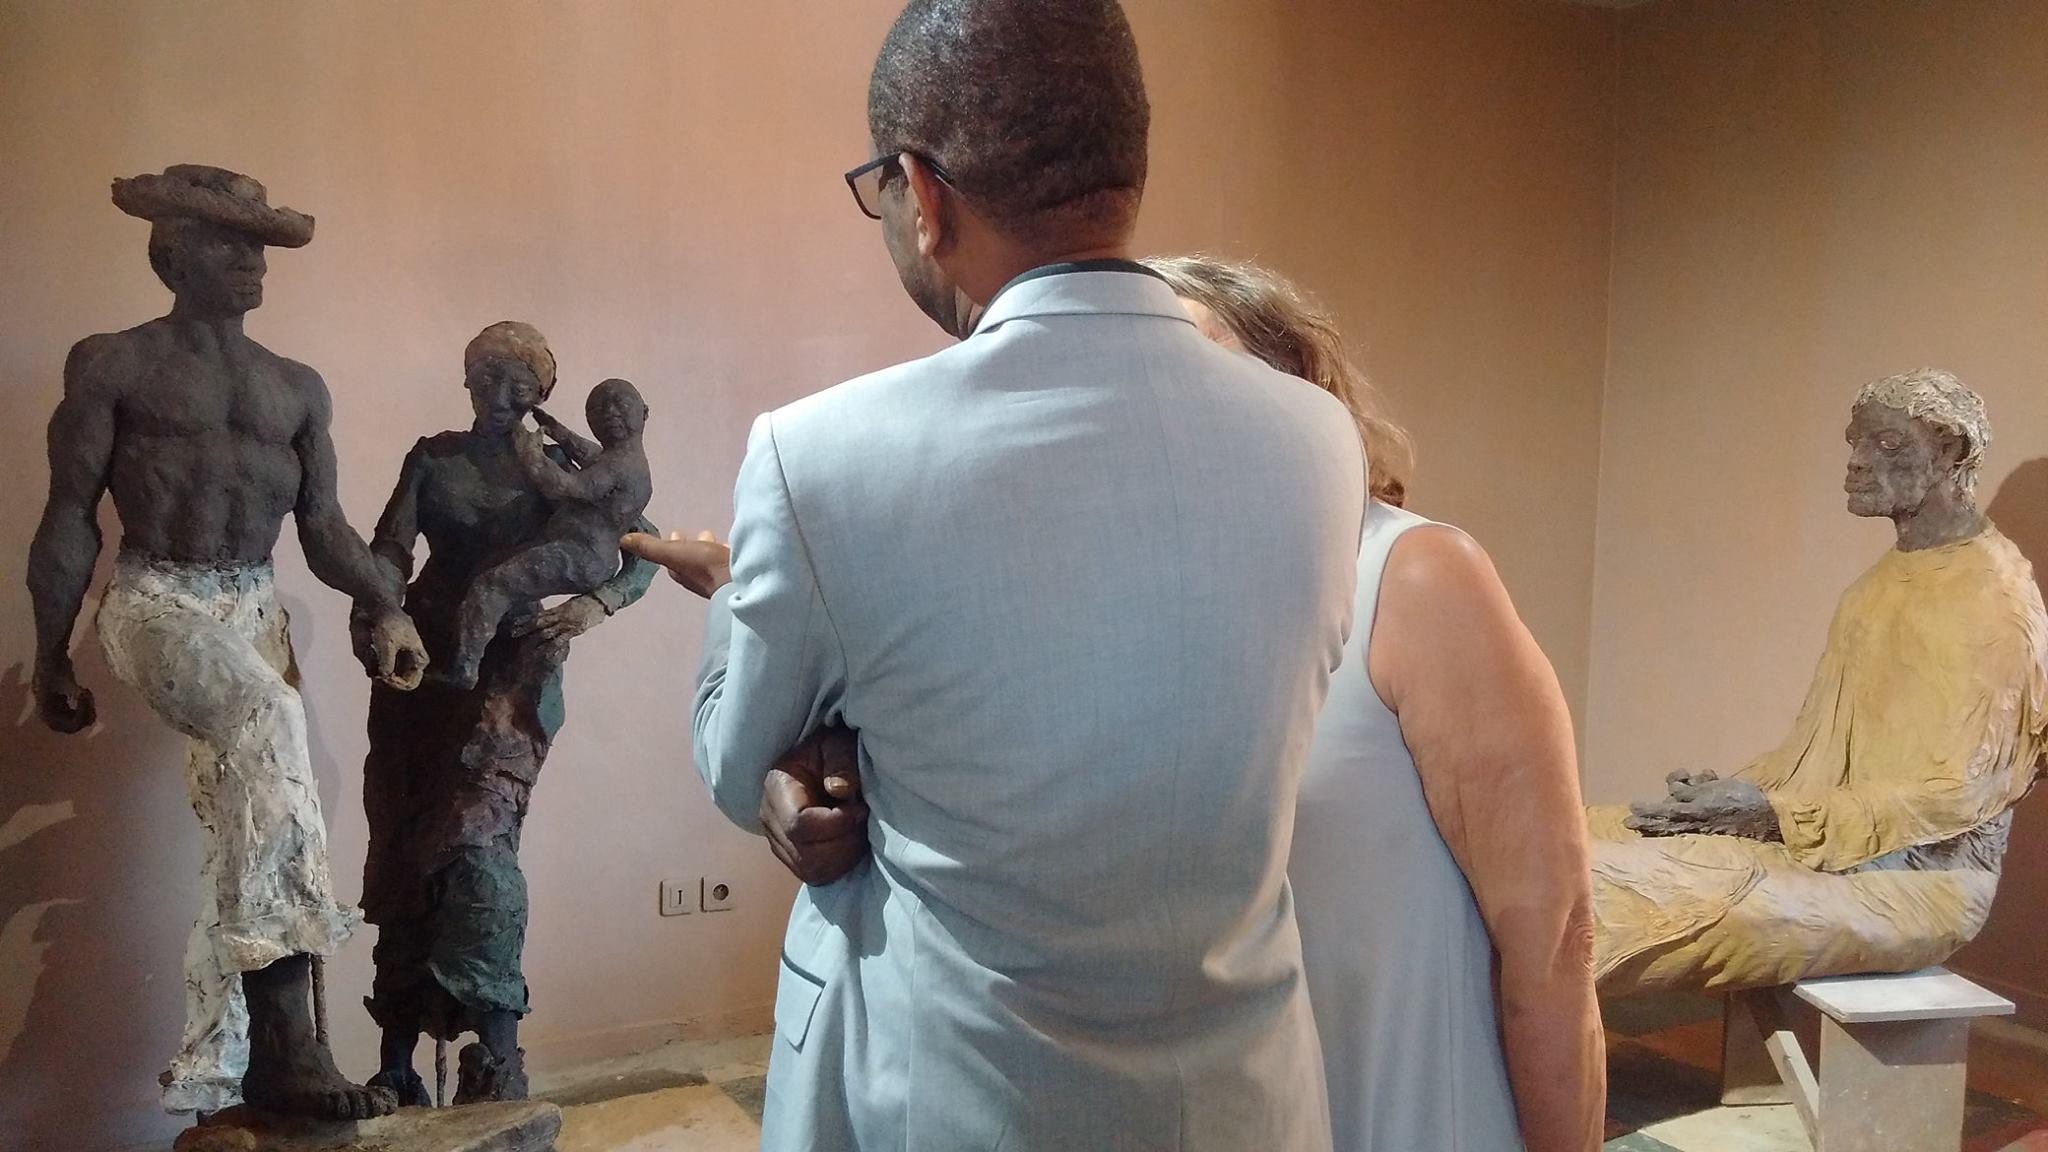 Inauguration de la Maison Ousmane Sow: Youssou Ndour a visité la Maison Ousmane Sow